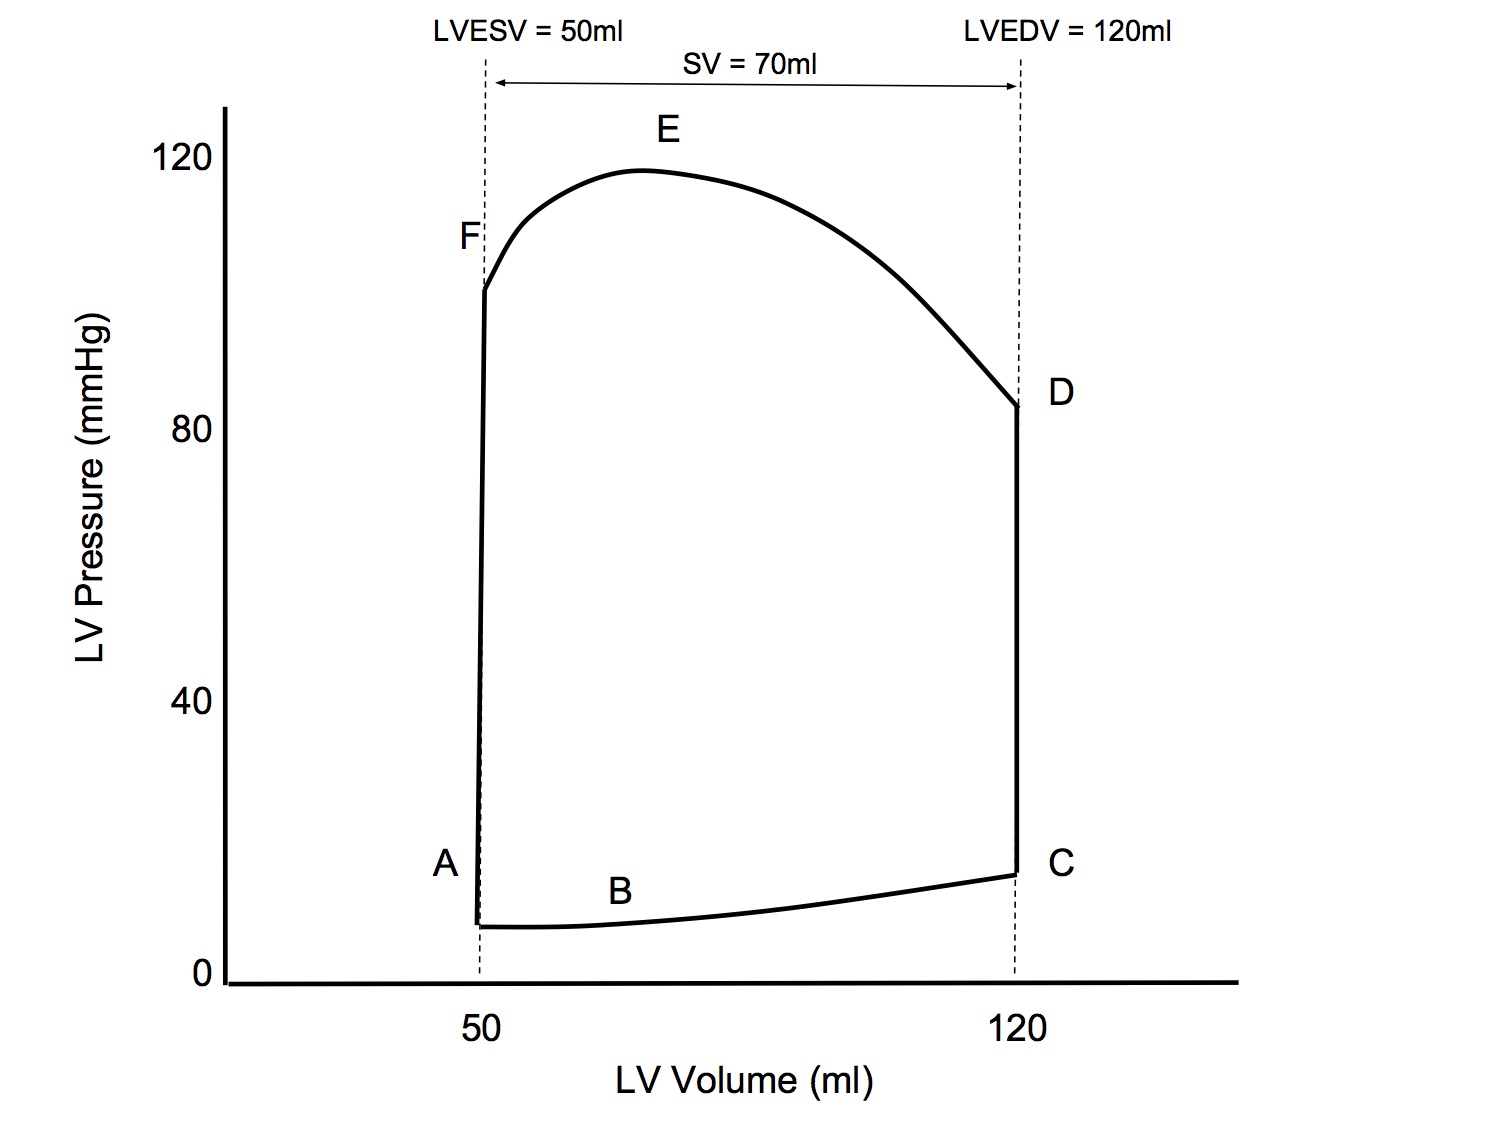 LV Pressure Volume Loop Simplified.jpg